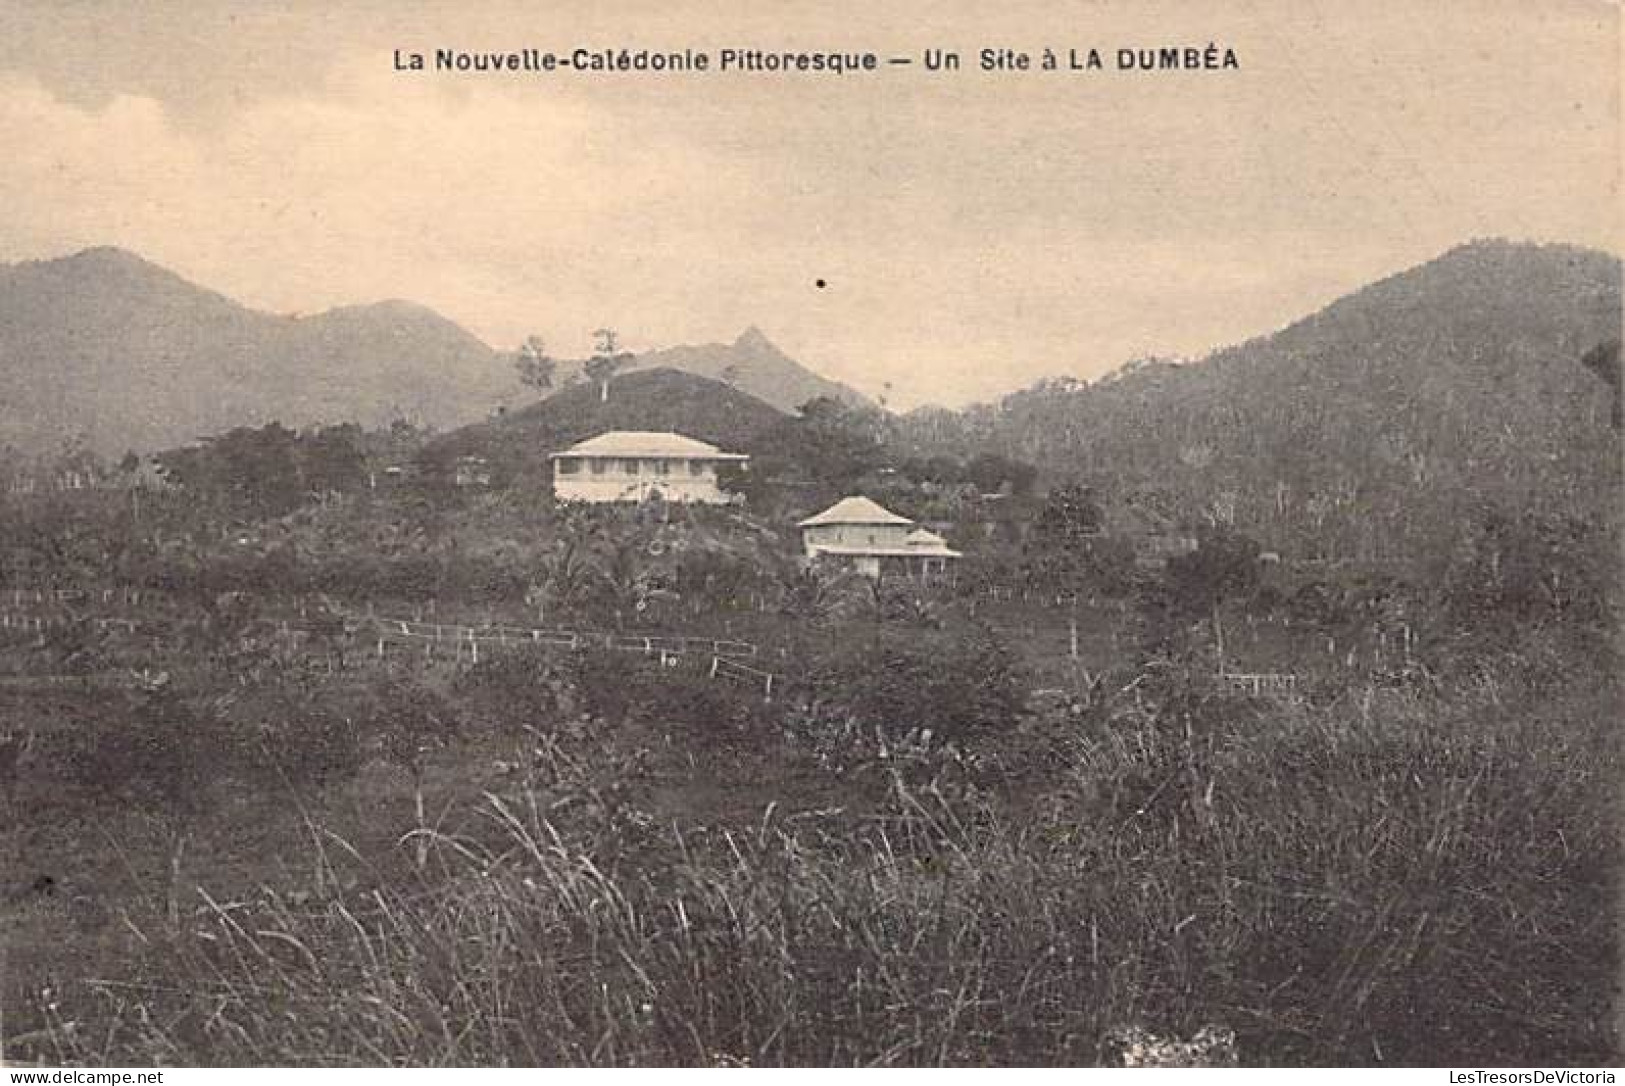 Nouvelle Calédonie Pittoresque - Un Site à La Dumbéa - Carte Postale Ancienne - Neukaledonien